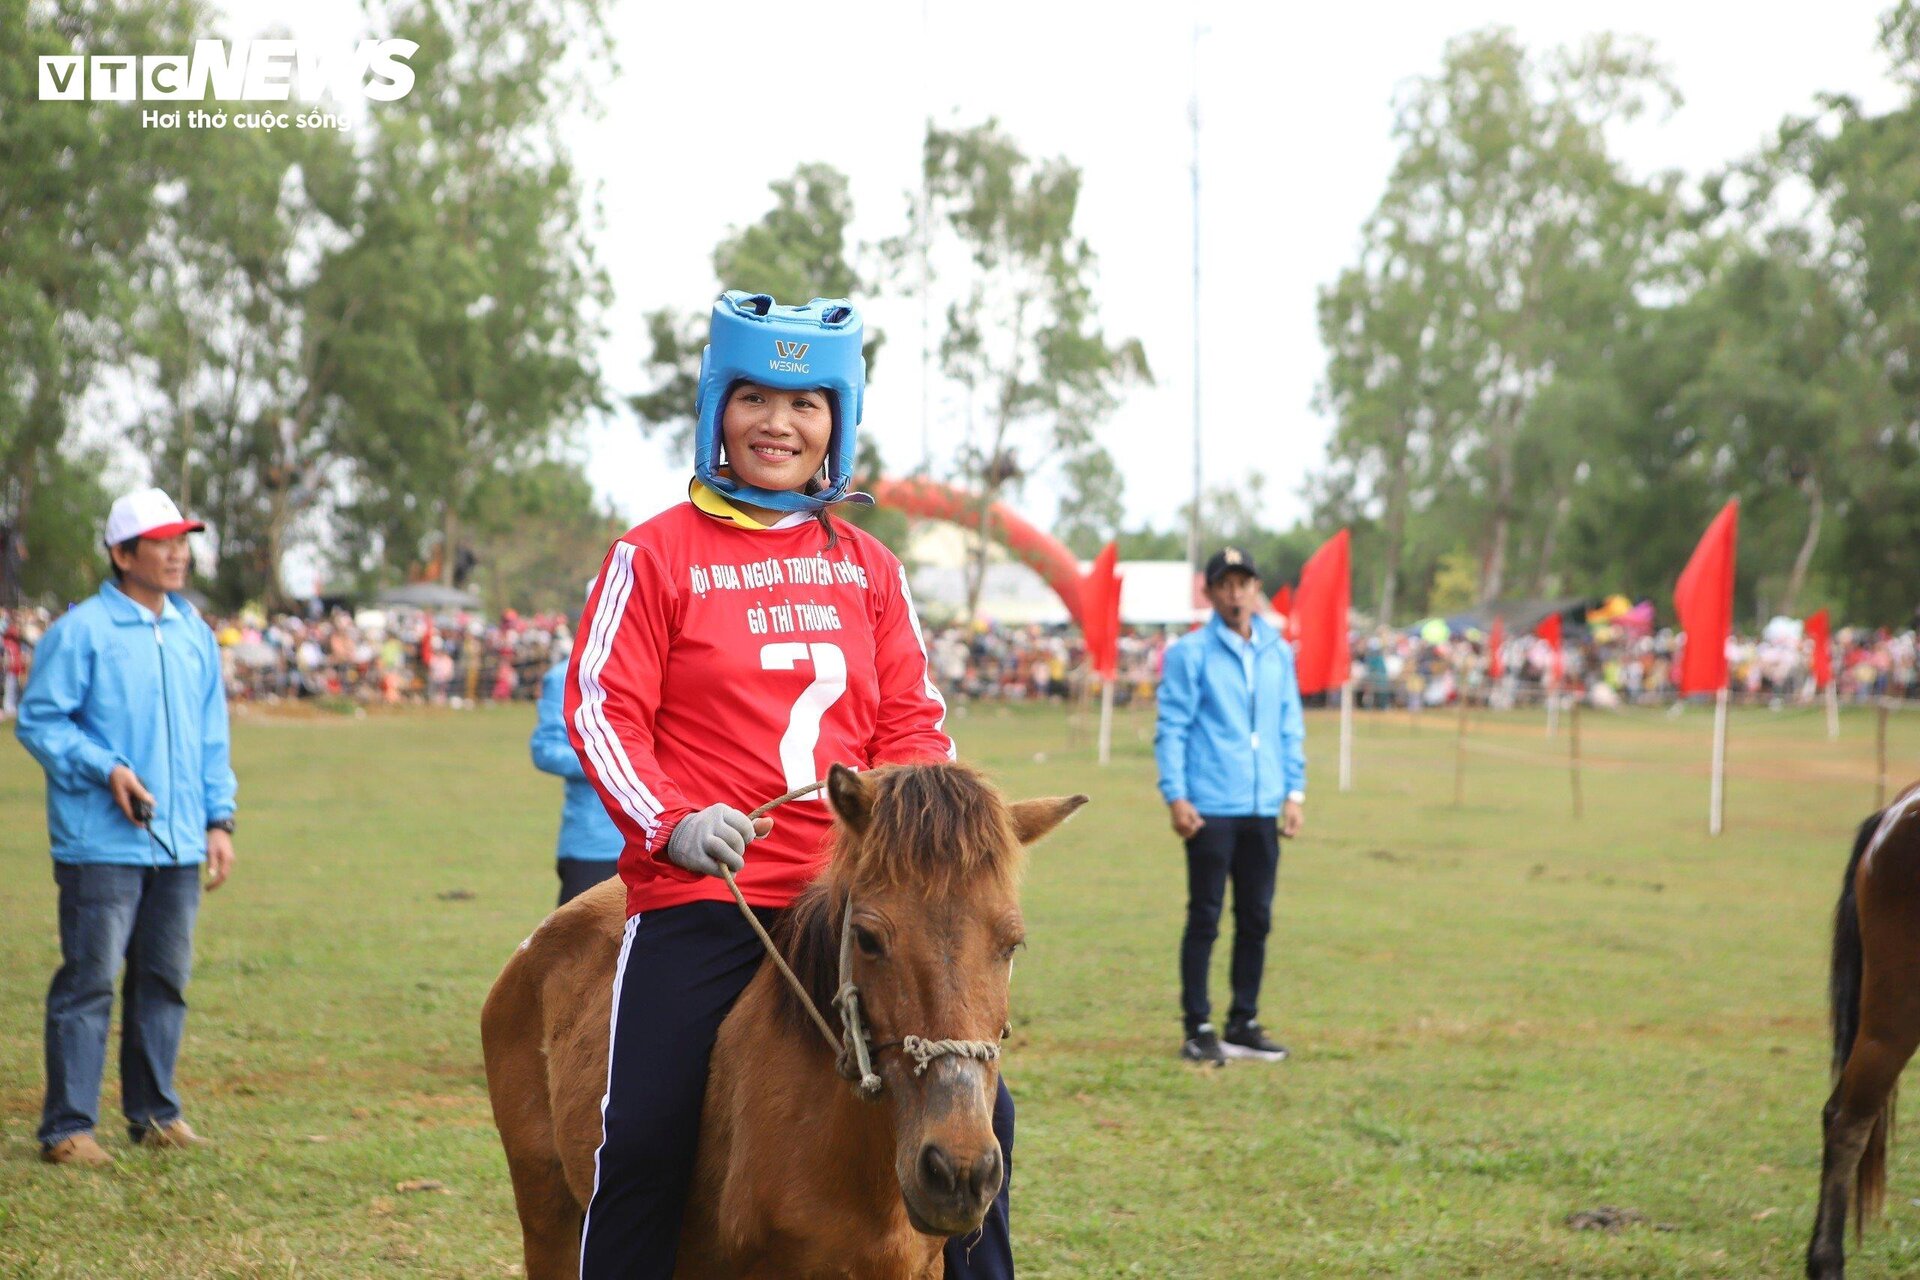 Xem nữ 'kỵ sĩ nông dân' tranh tài tại lễ hội đua ngựa độc nhất vô nhị Phú Yên - 4